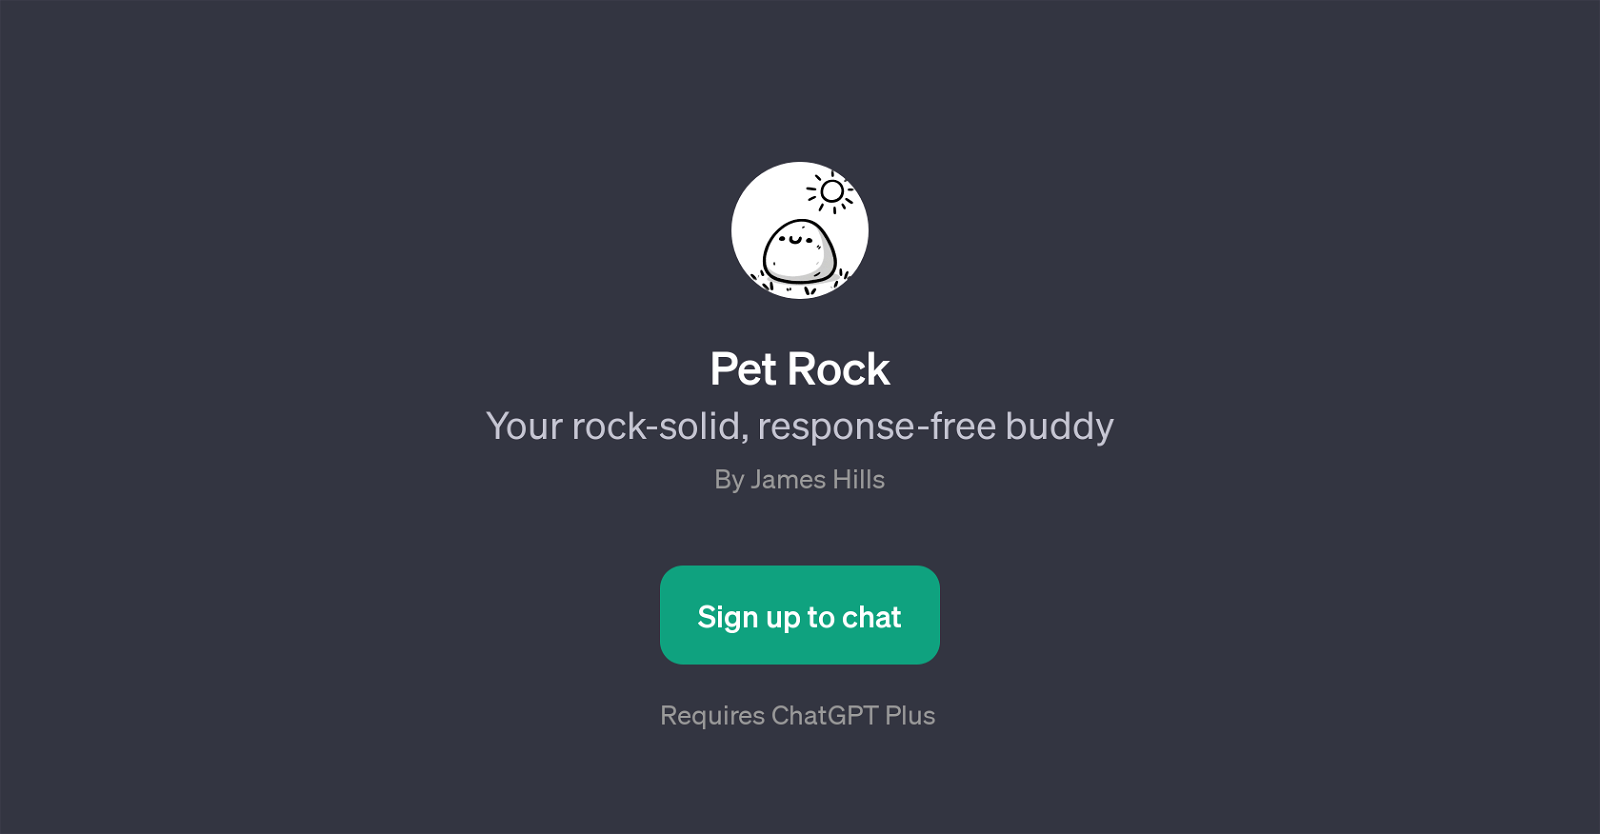 Pet Rock website